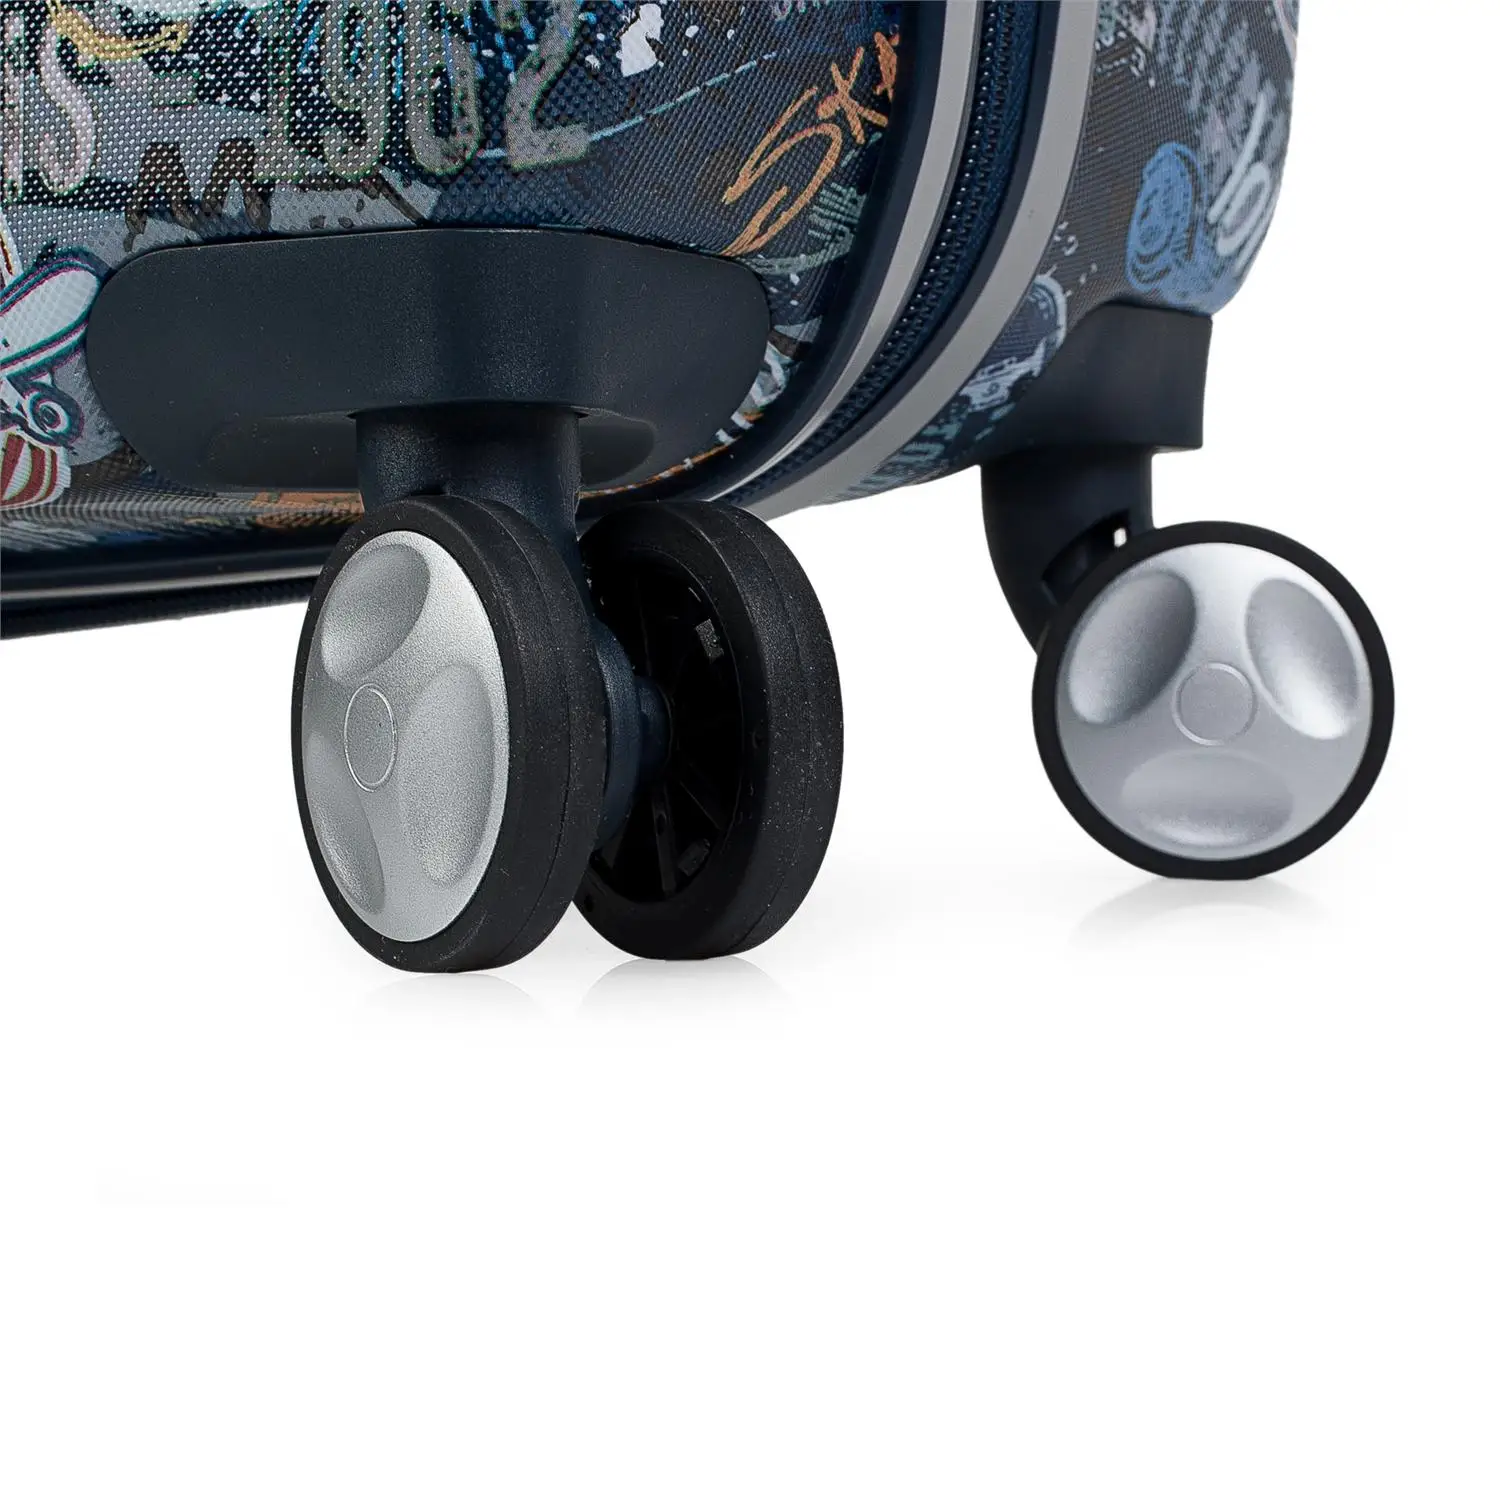 Лоис модель Сейнт Морис багаж набор младенческой молодежи жесткий 4 колеса 55/67 ABS 130100